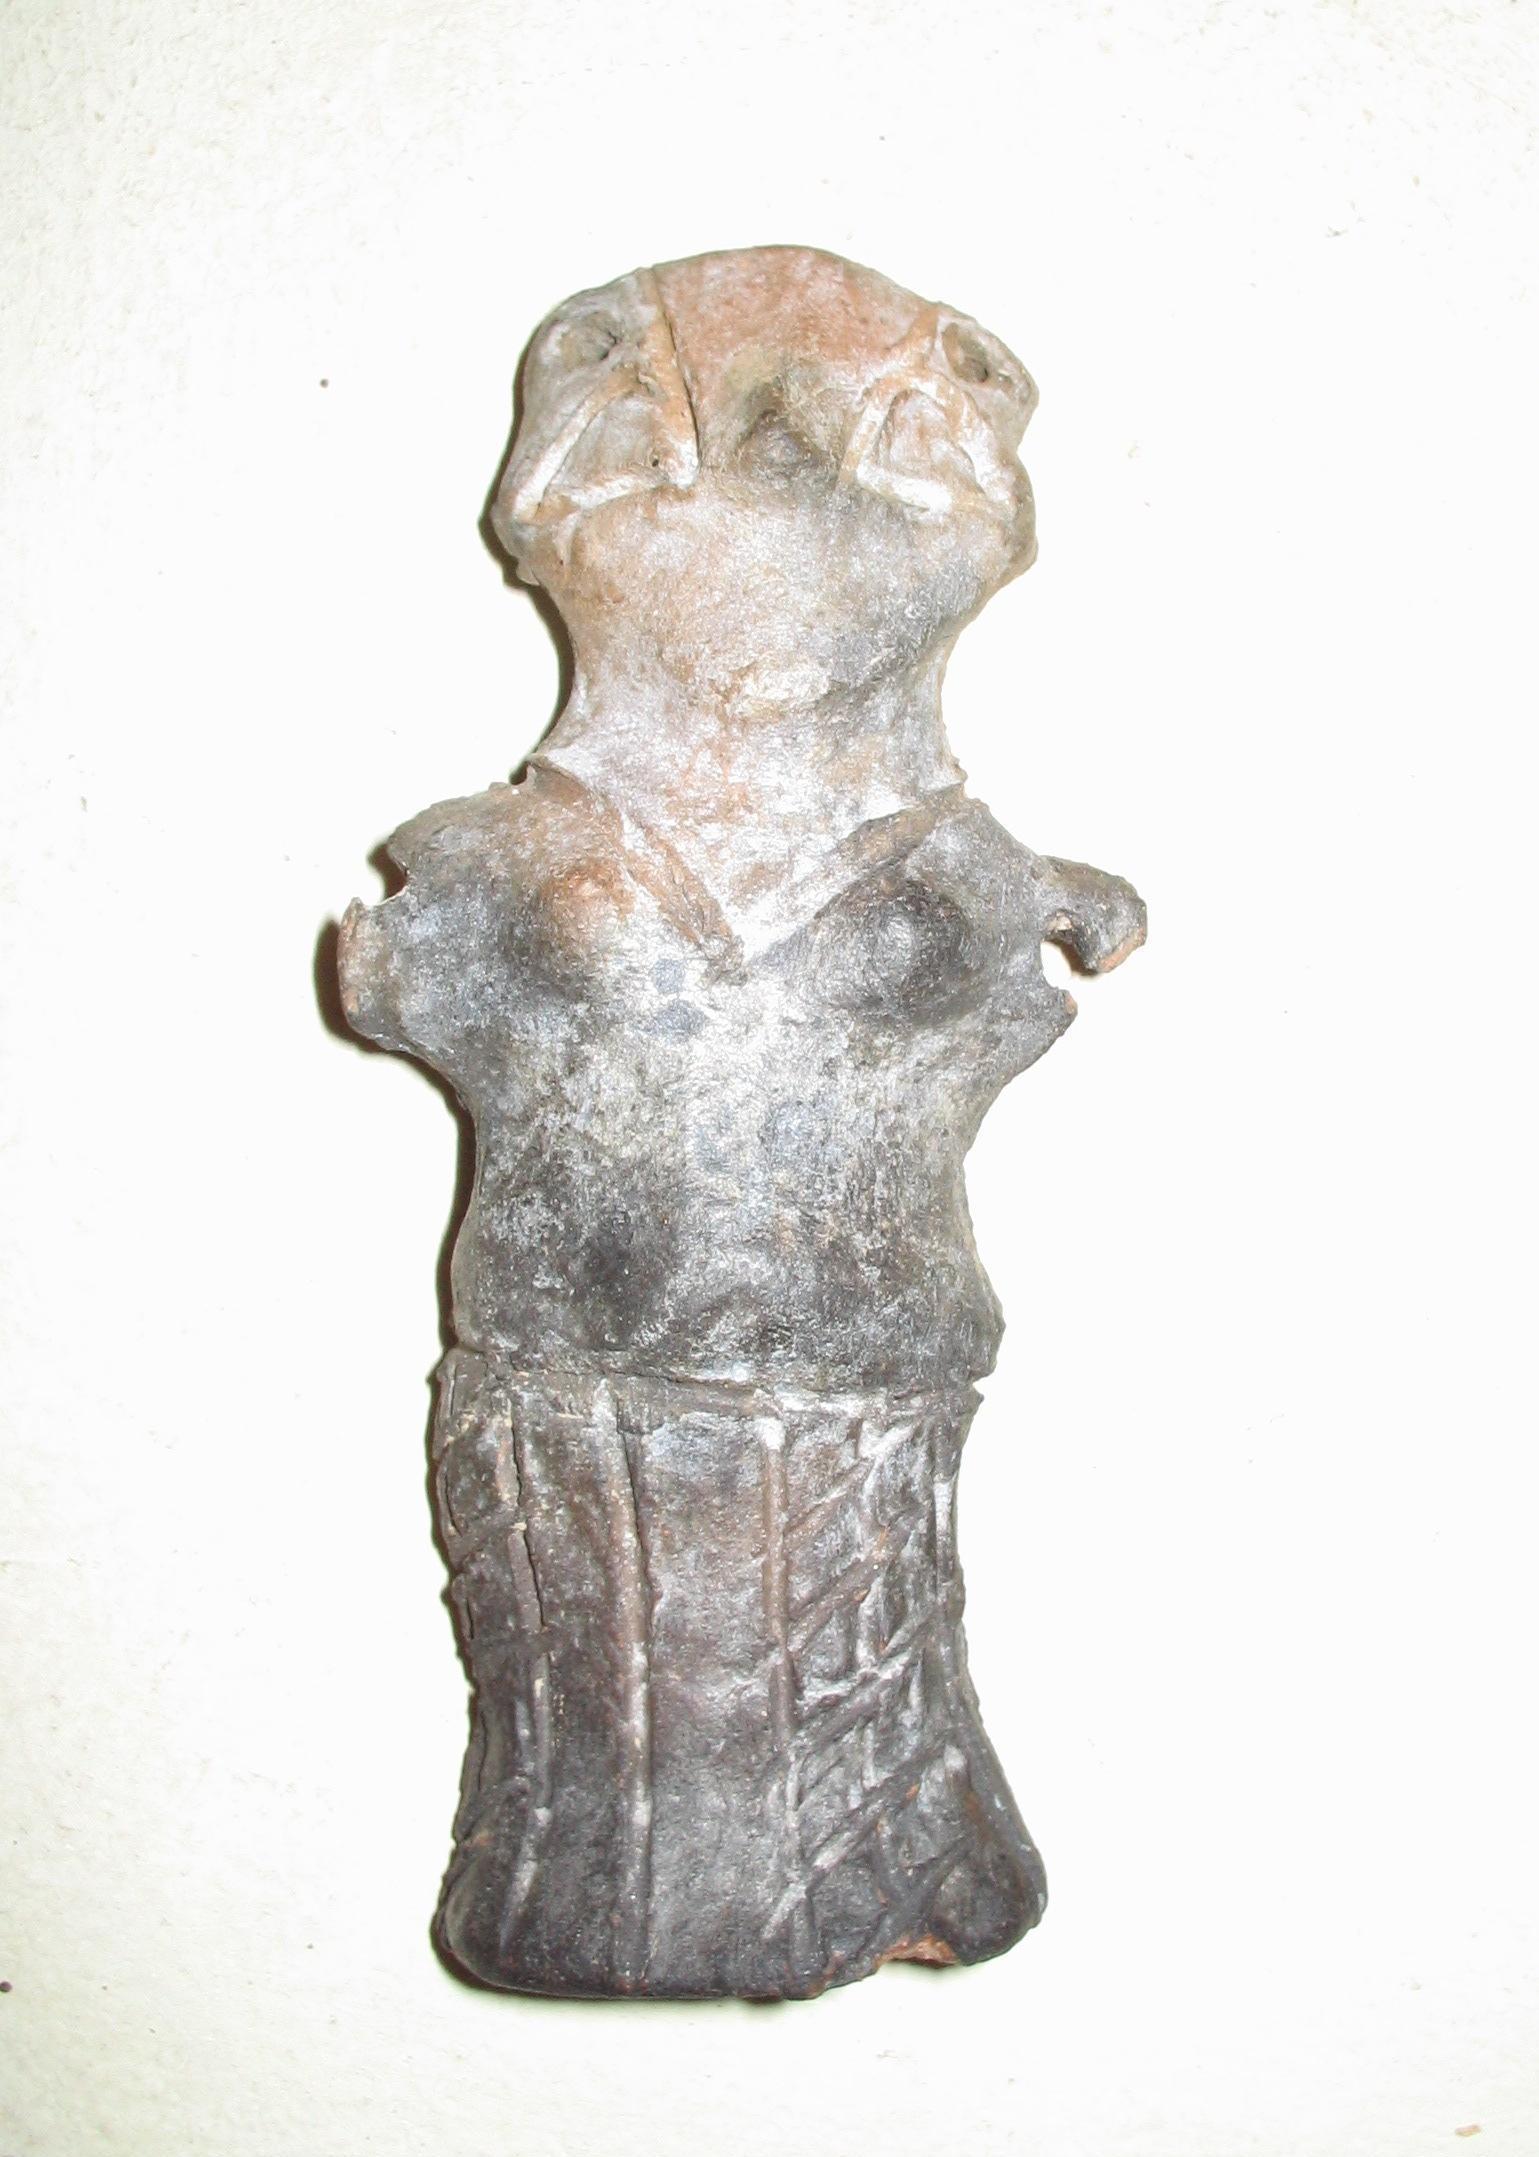 Copper artefact Rudna Glava 4000 BC